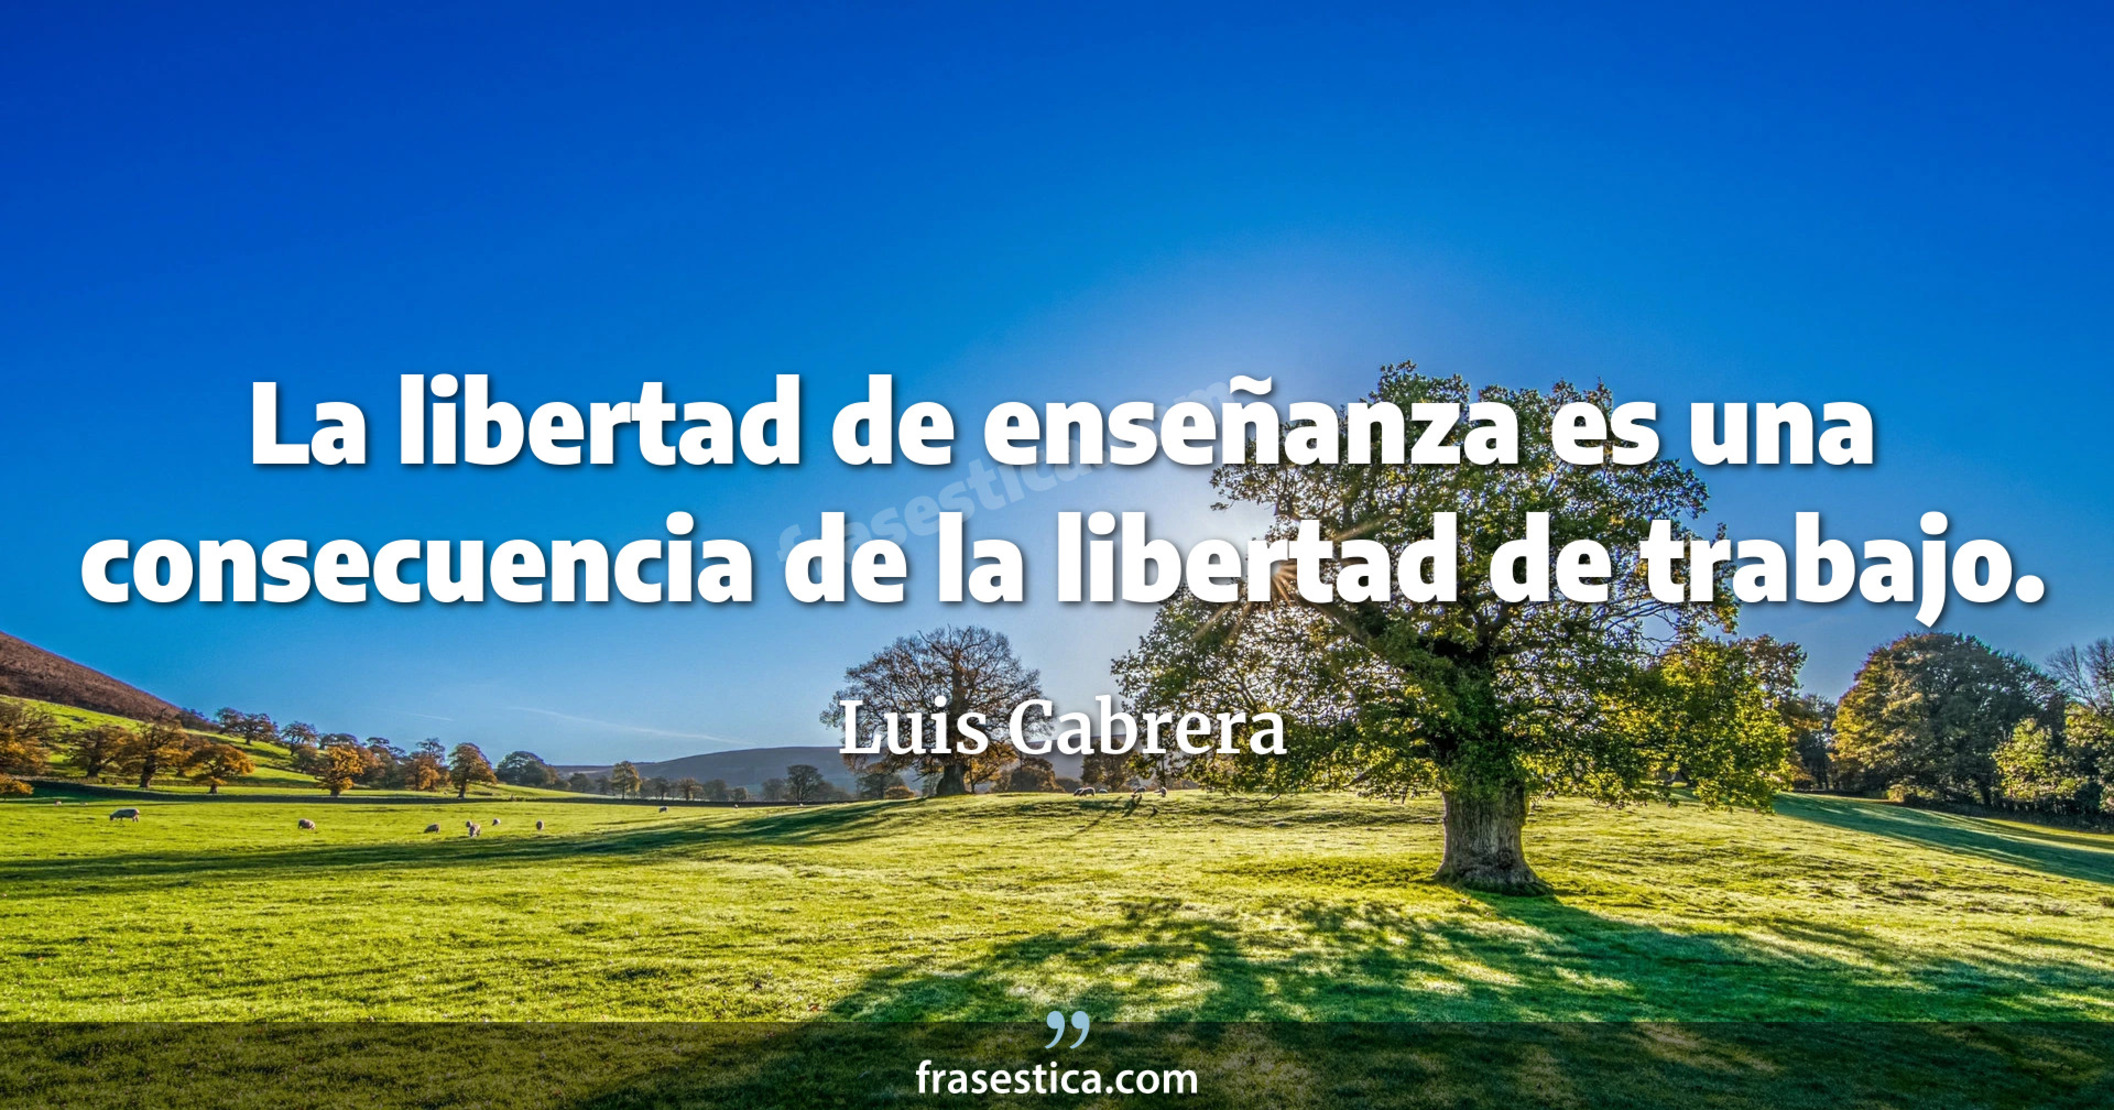 La libertad de enseñanza es una consecuencia de la libertad de trabajo. - Luis Cabrera